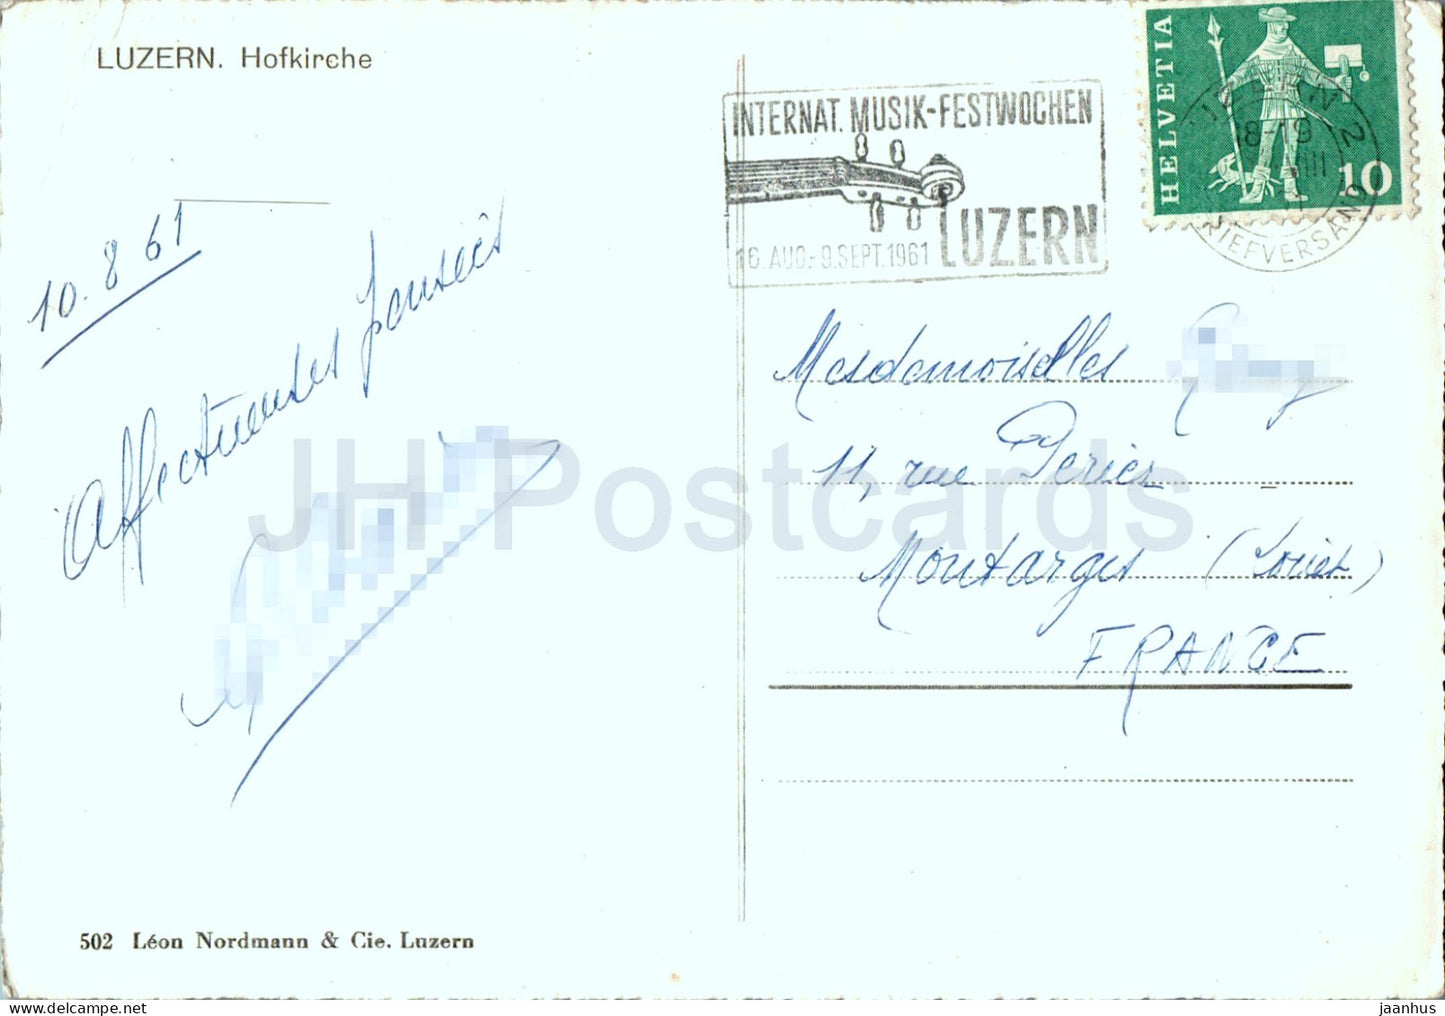 Luzern - Luzern - Hofkirche - Kirche - 502 - 1961 - Schweiz - gebraucht 